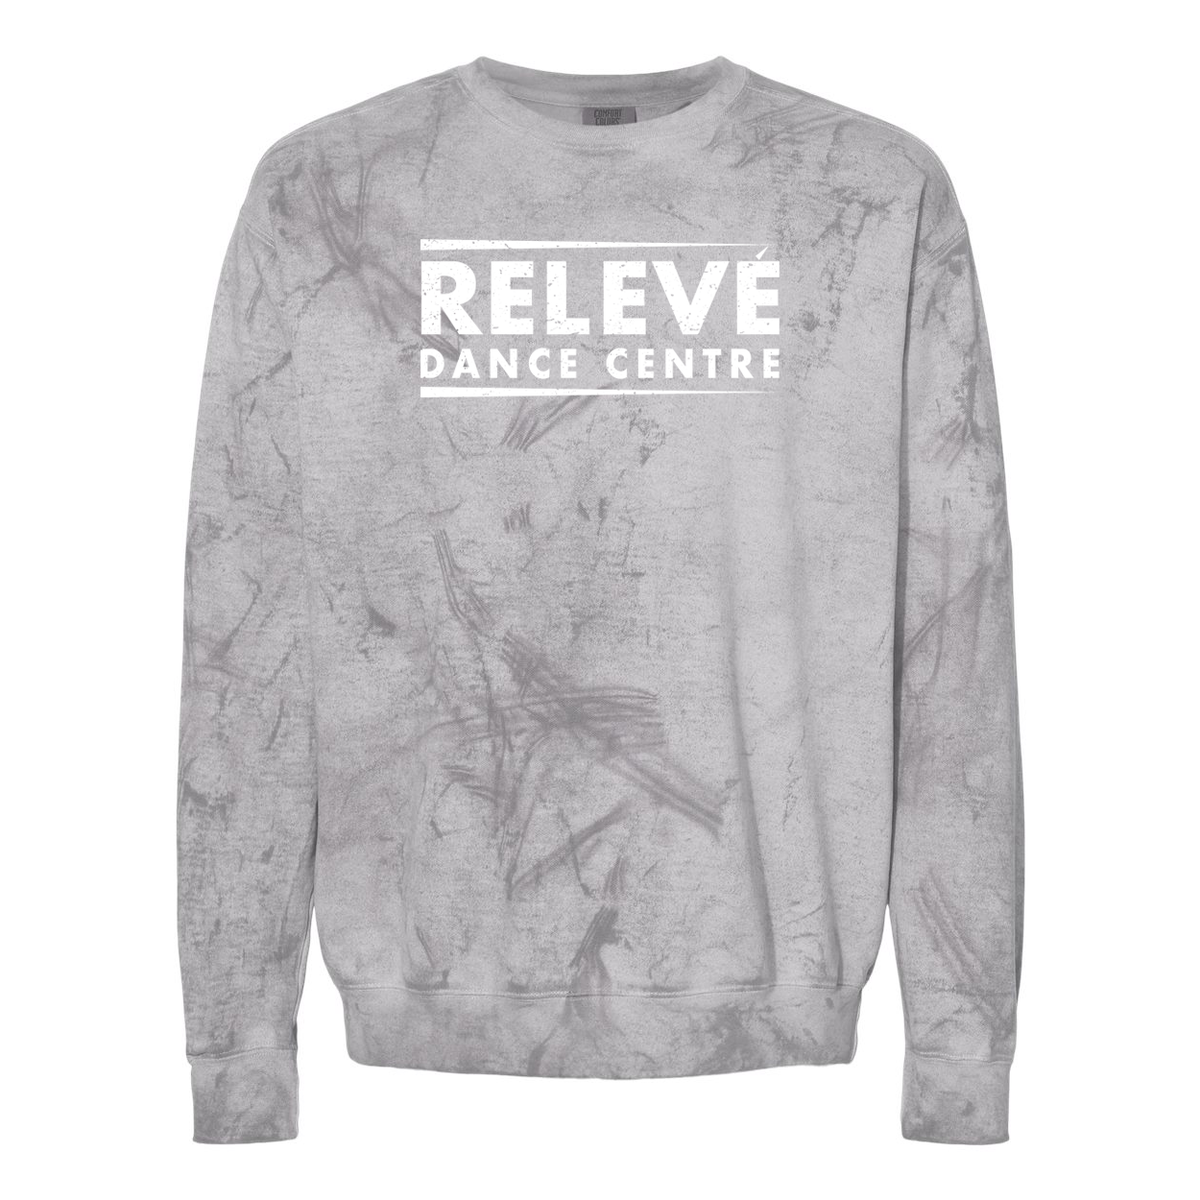 Relevé Dance Centre Colorblast Crewneck Sweatshirt